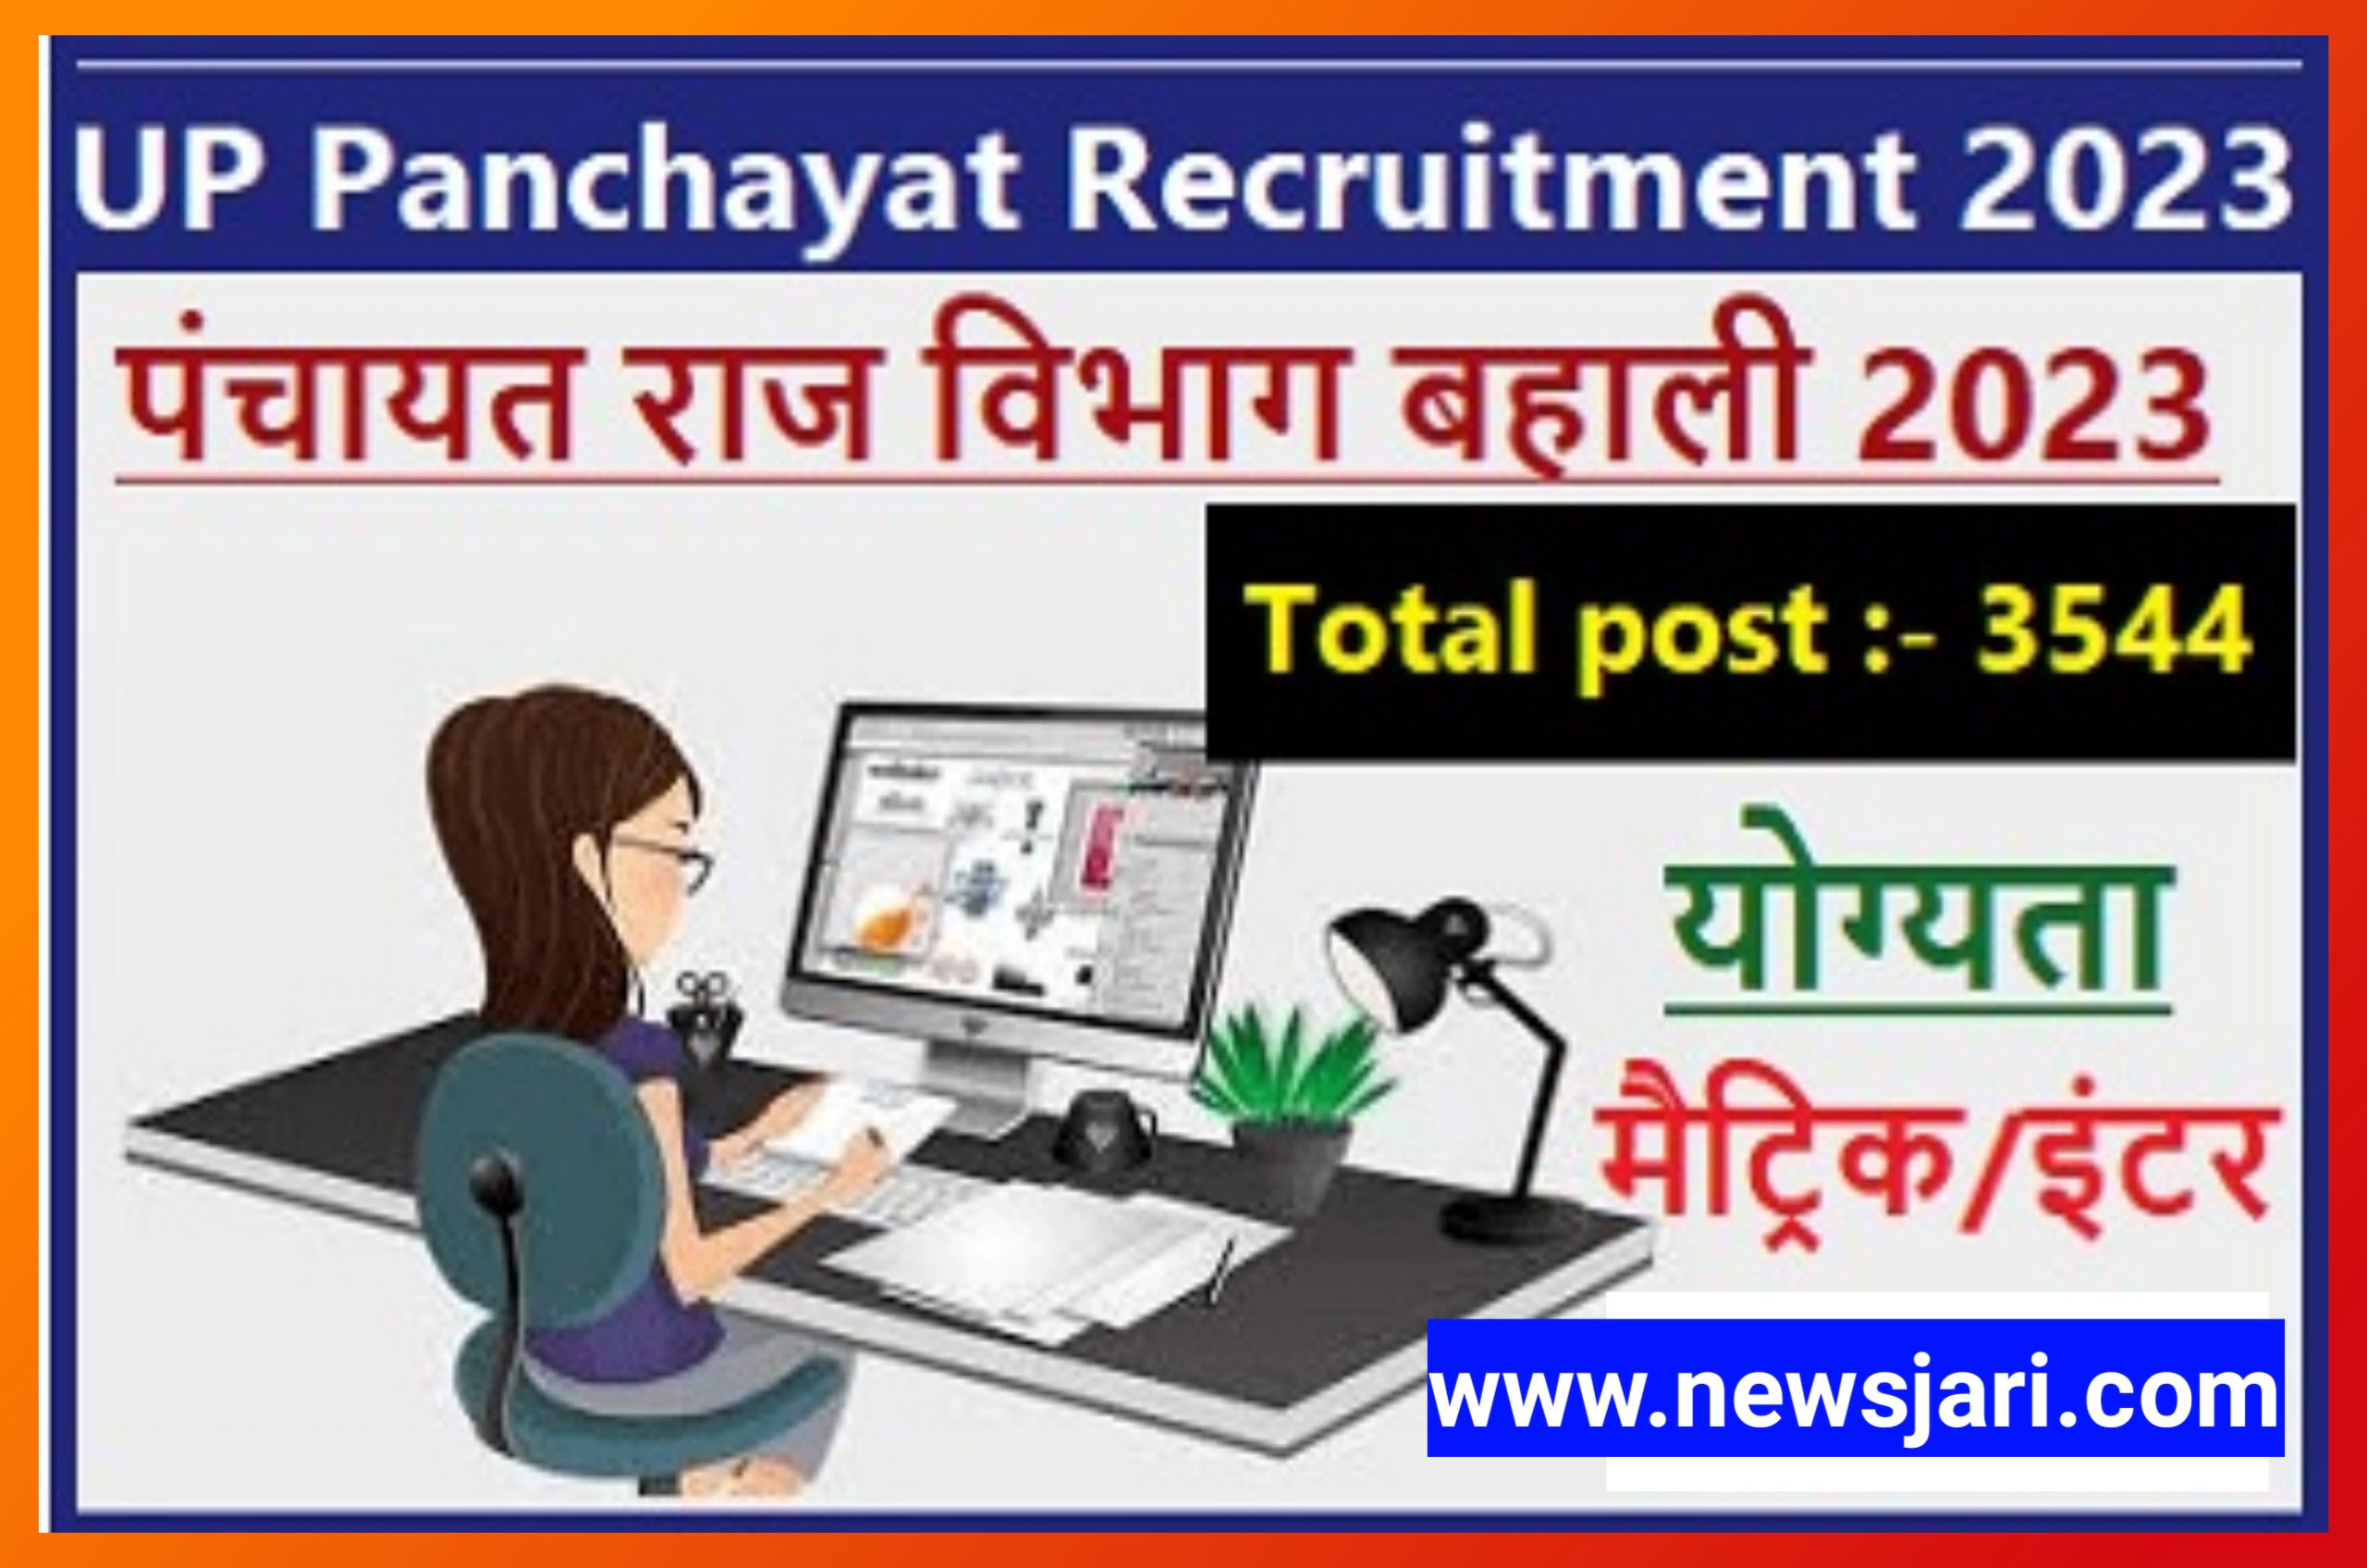 Up Panchayat Retirement 2023 : पंचायत सहायक और डाटा एंट्री ऑपरेटर के 3544 पदों पर भर्ती जल्दी करें आवेदन best link